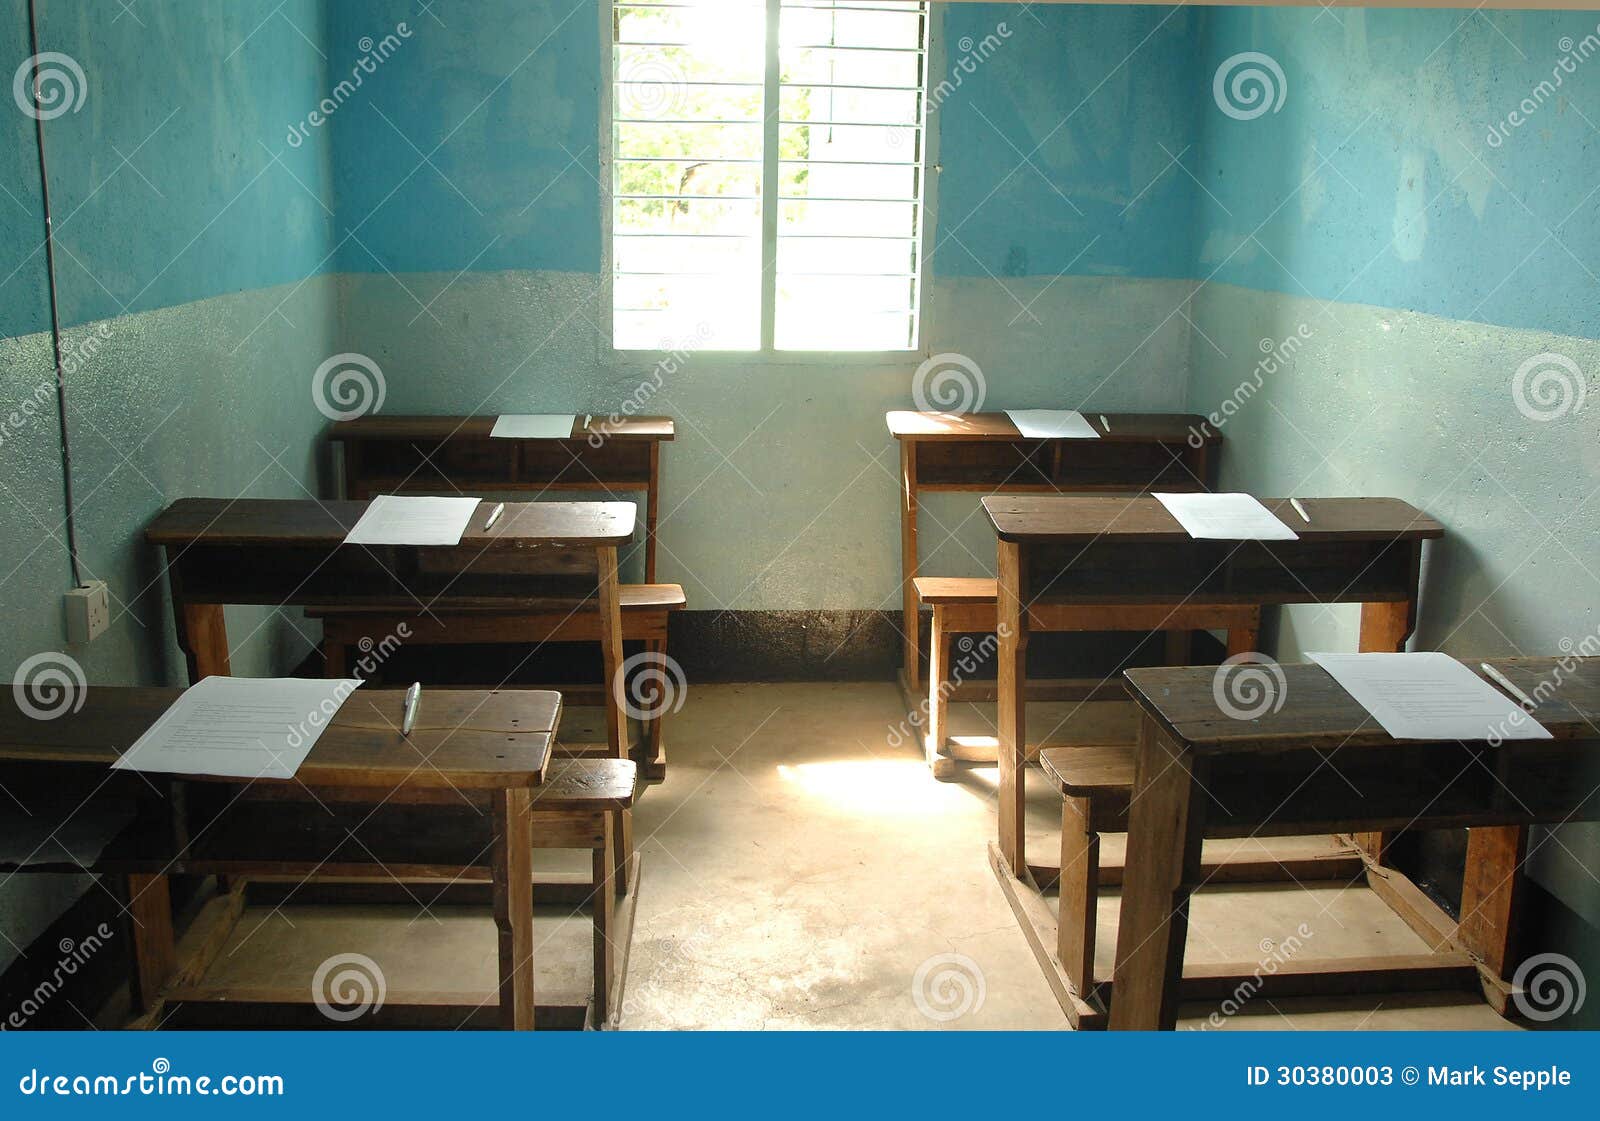 Afrikanisches Klassenzimmer. Ein leeres Schulklassenzimmer in einem afrikanischen Dorf mit sechs Tabellen und blauen Wänden